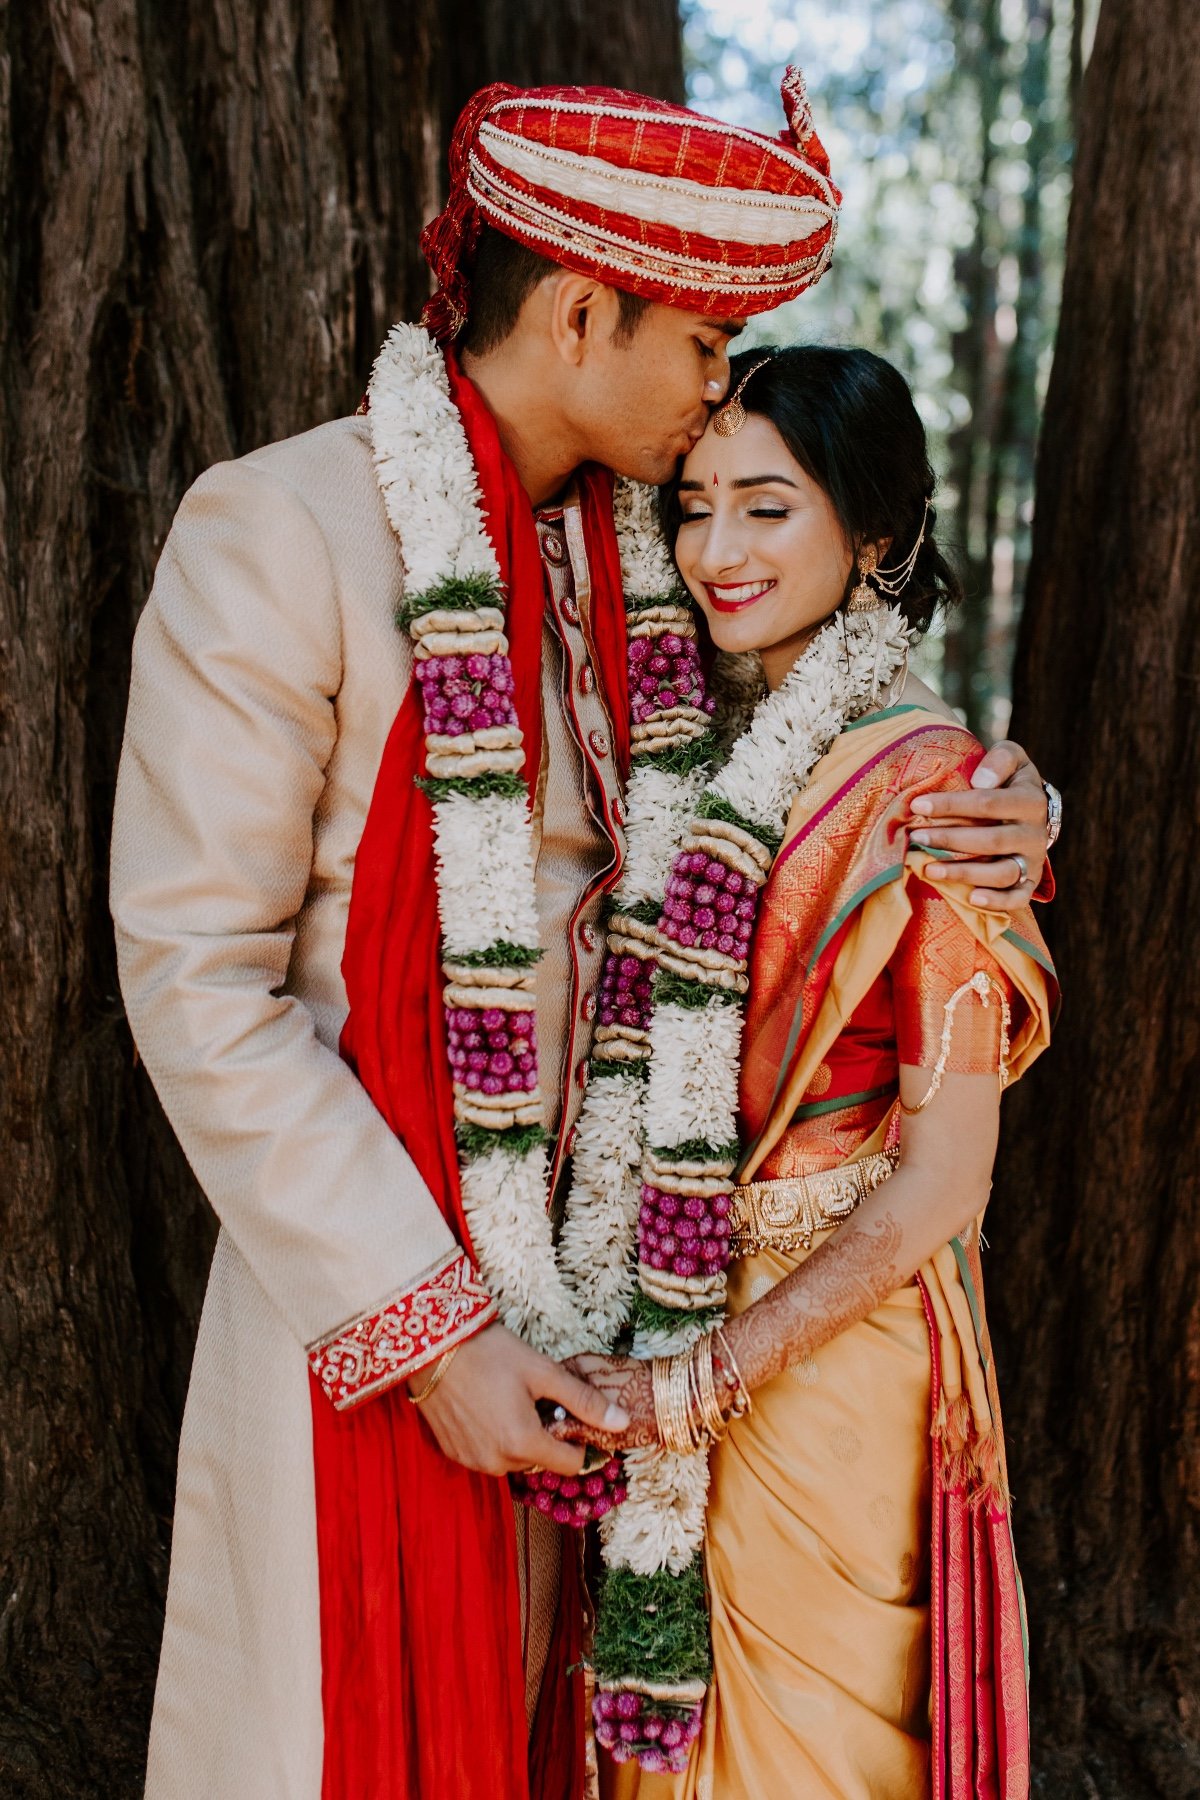 Hindu wedding in the redwoods